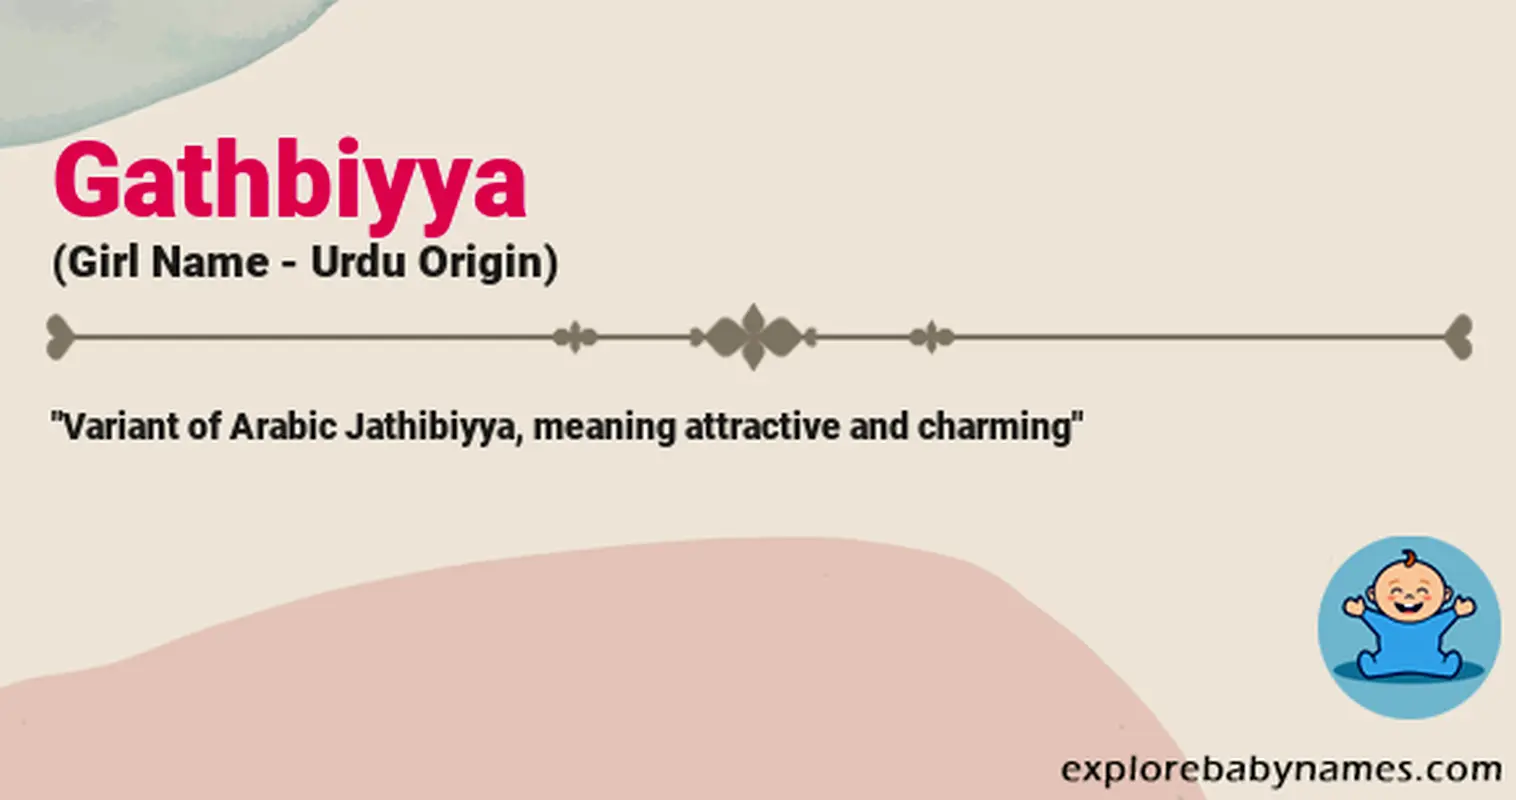 Meaning of Gathbiyya